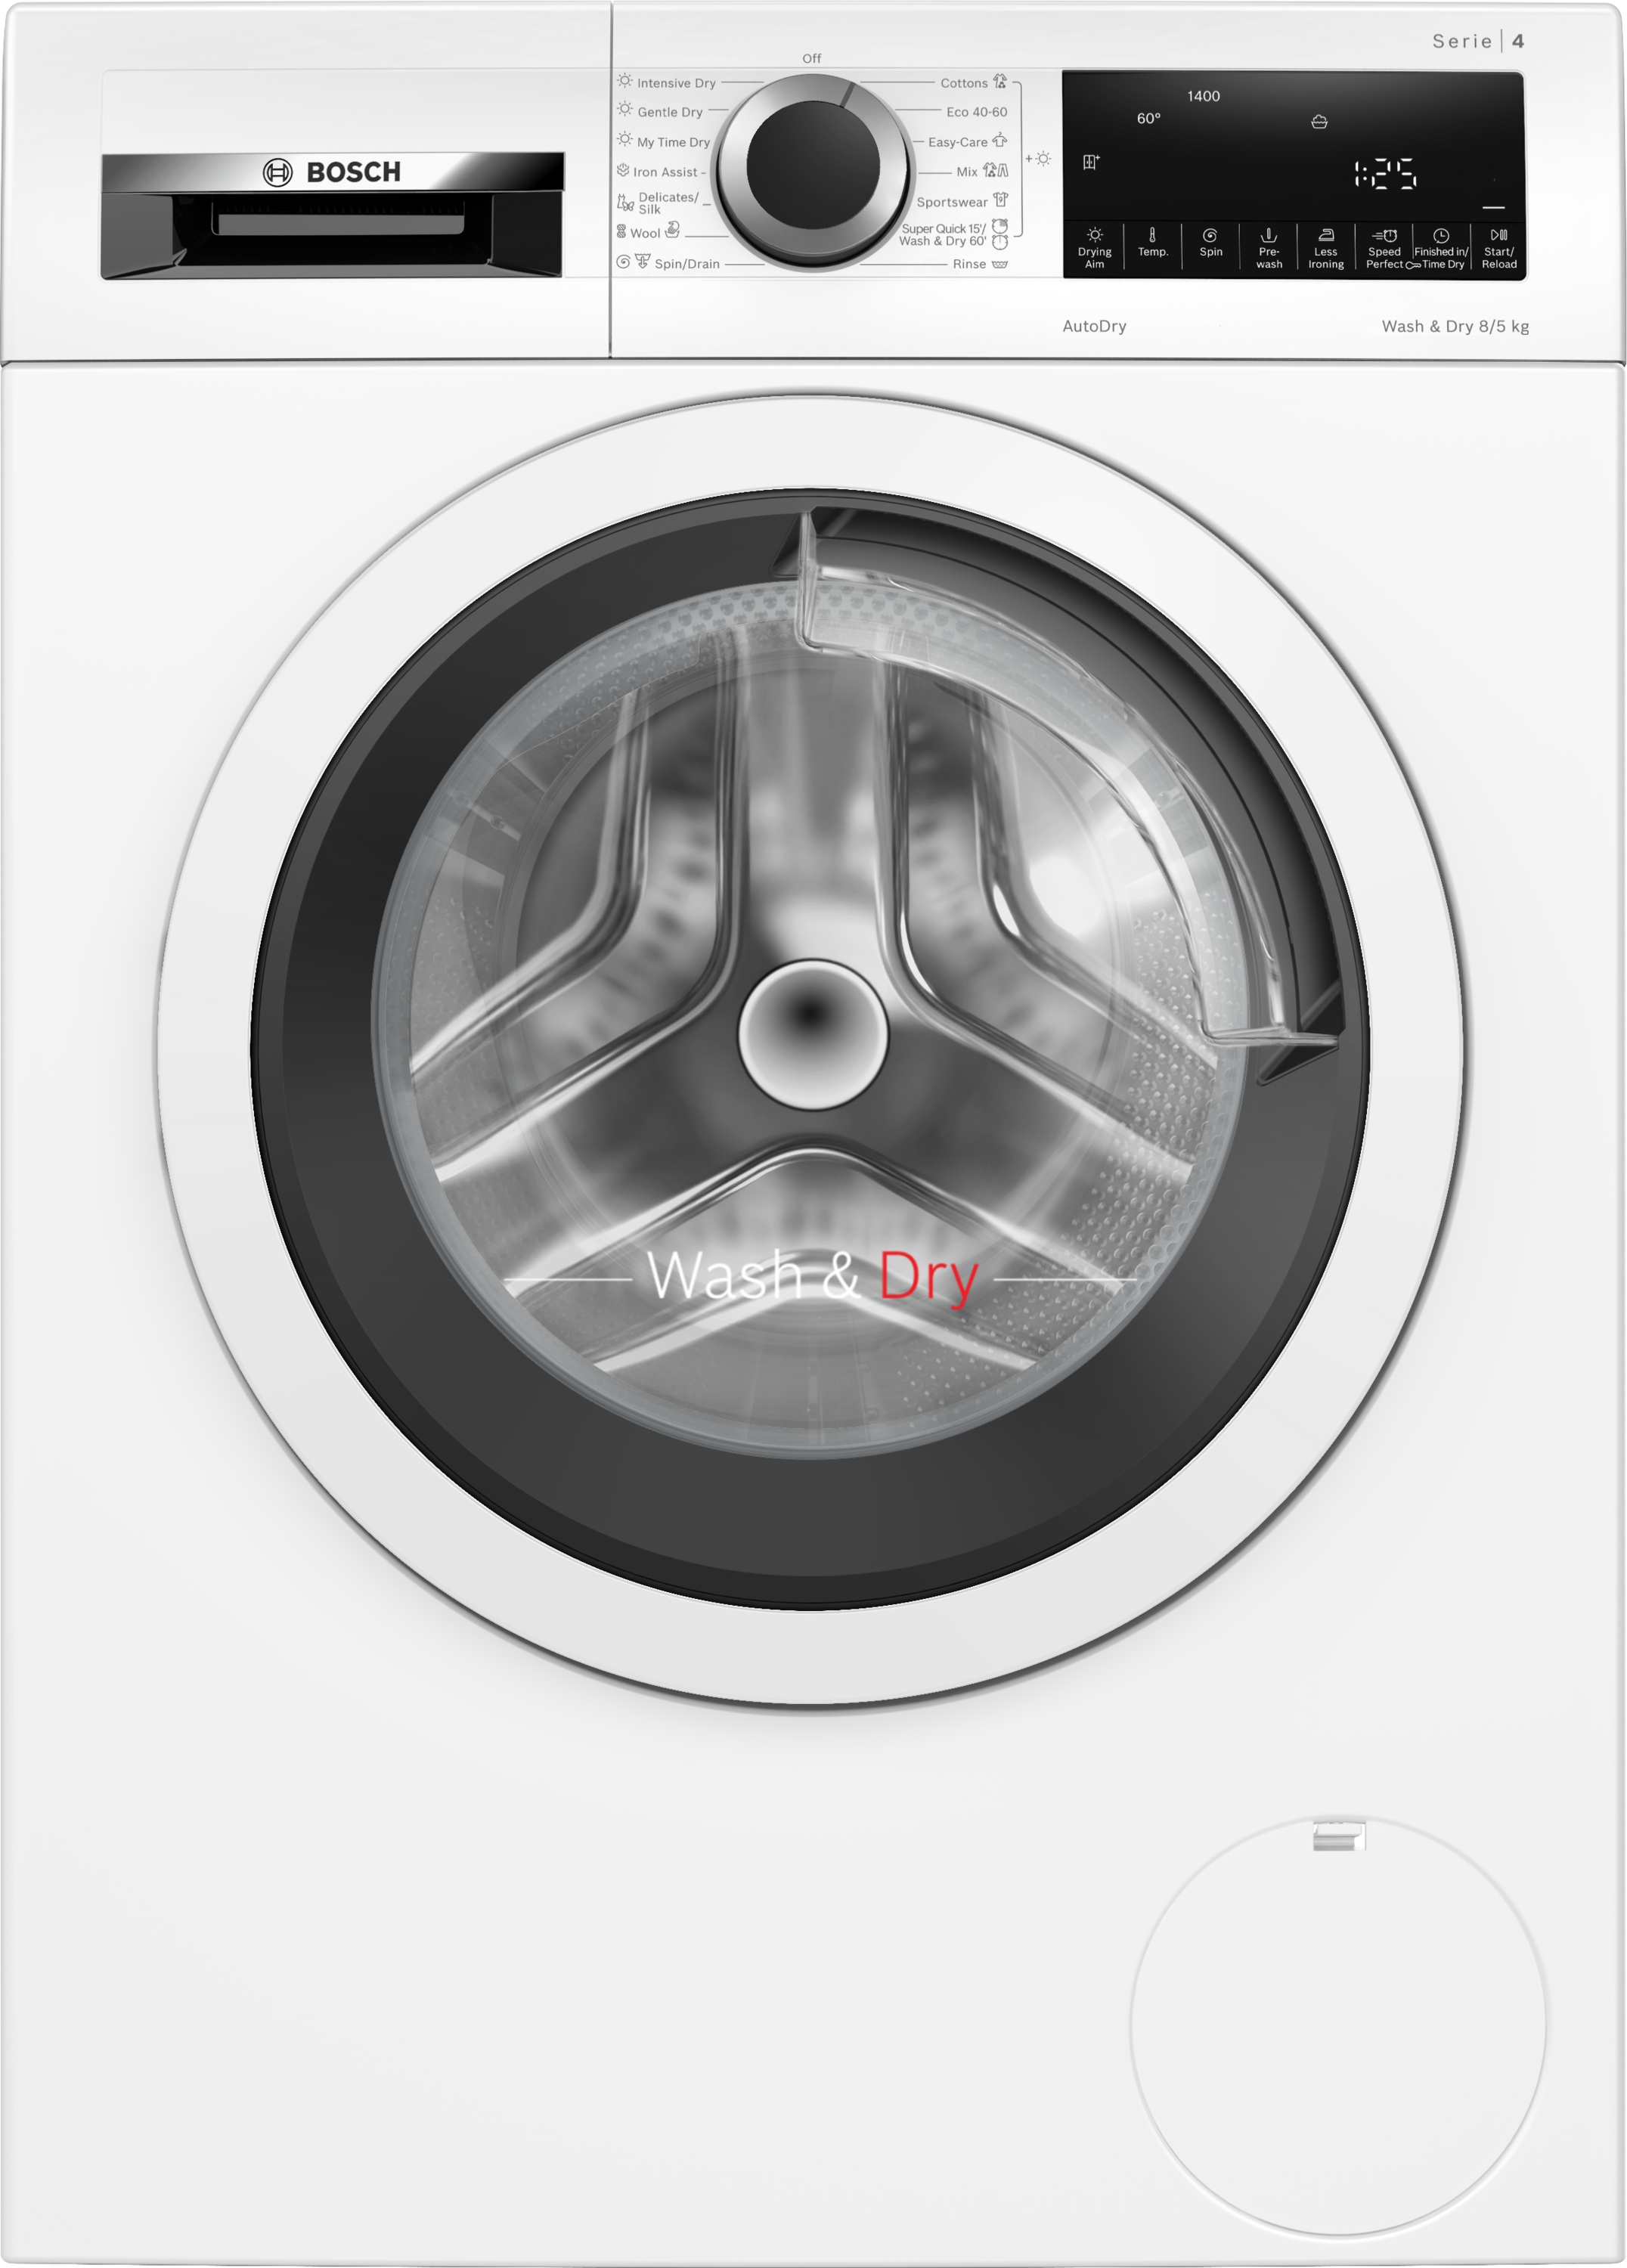 WNA13400BY Mașina de spălat rufe cu uscător, 8/5 kg, 1400 rpm, Iron Assist,AutoDry,EcoSilence Drive™,Wash & Dry 60,Sportswear.Clasa Energetica E,5 Ani Garantie